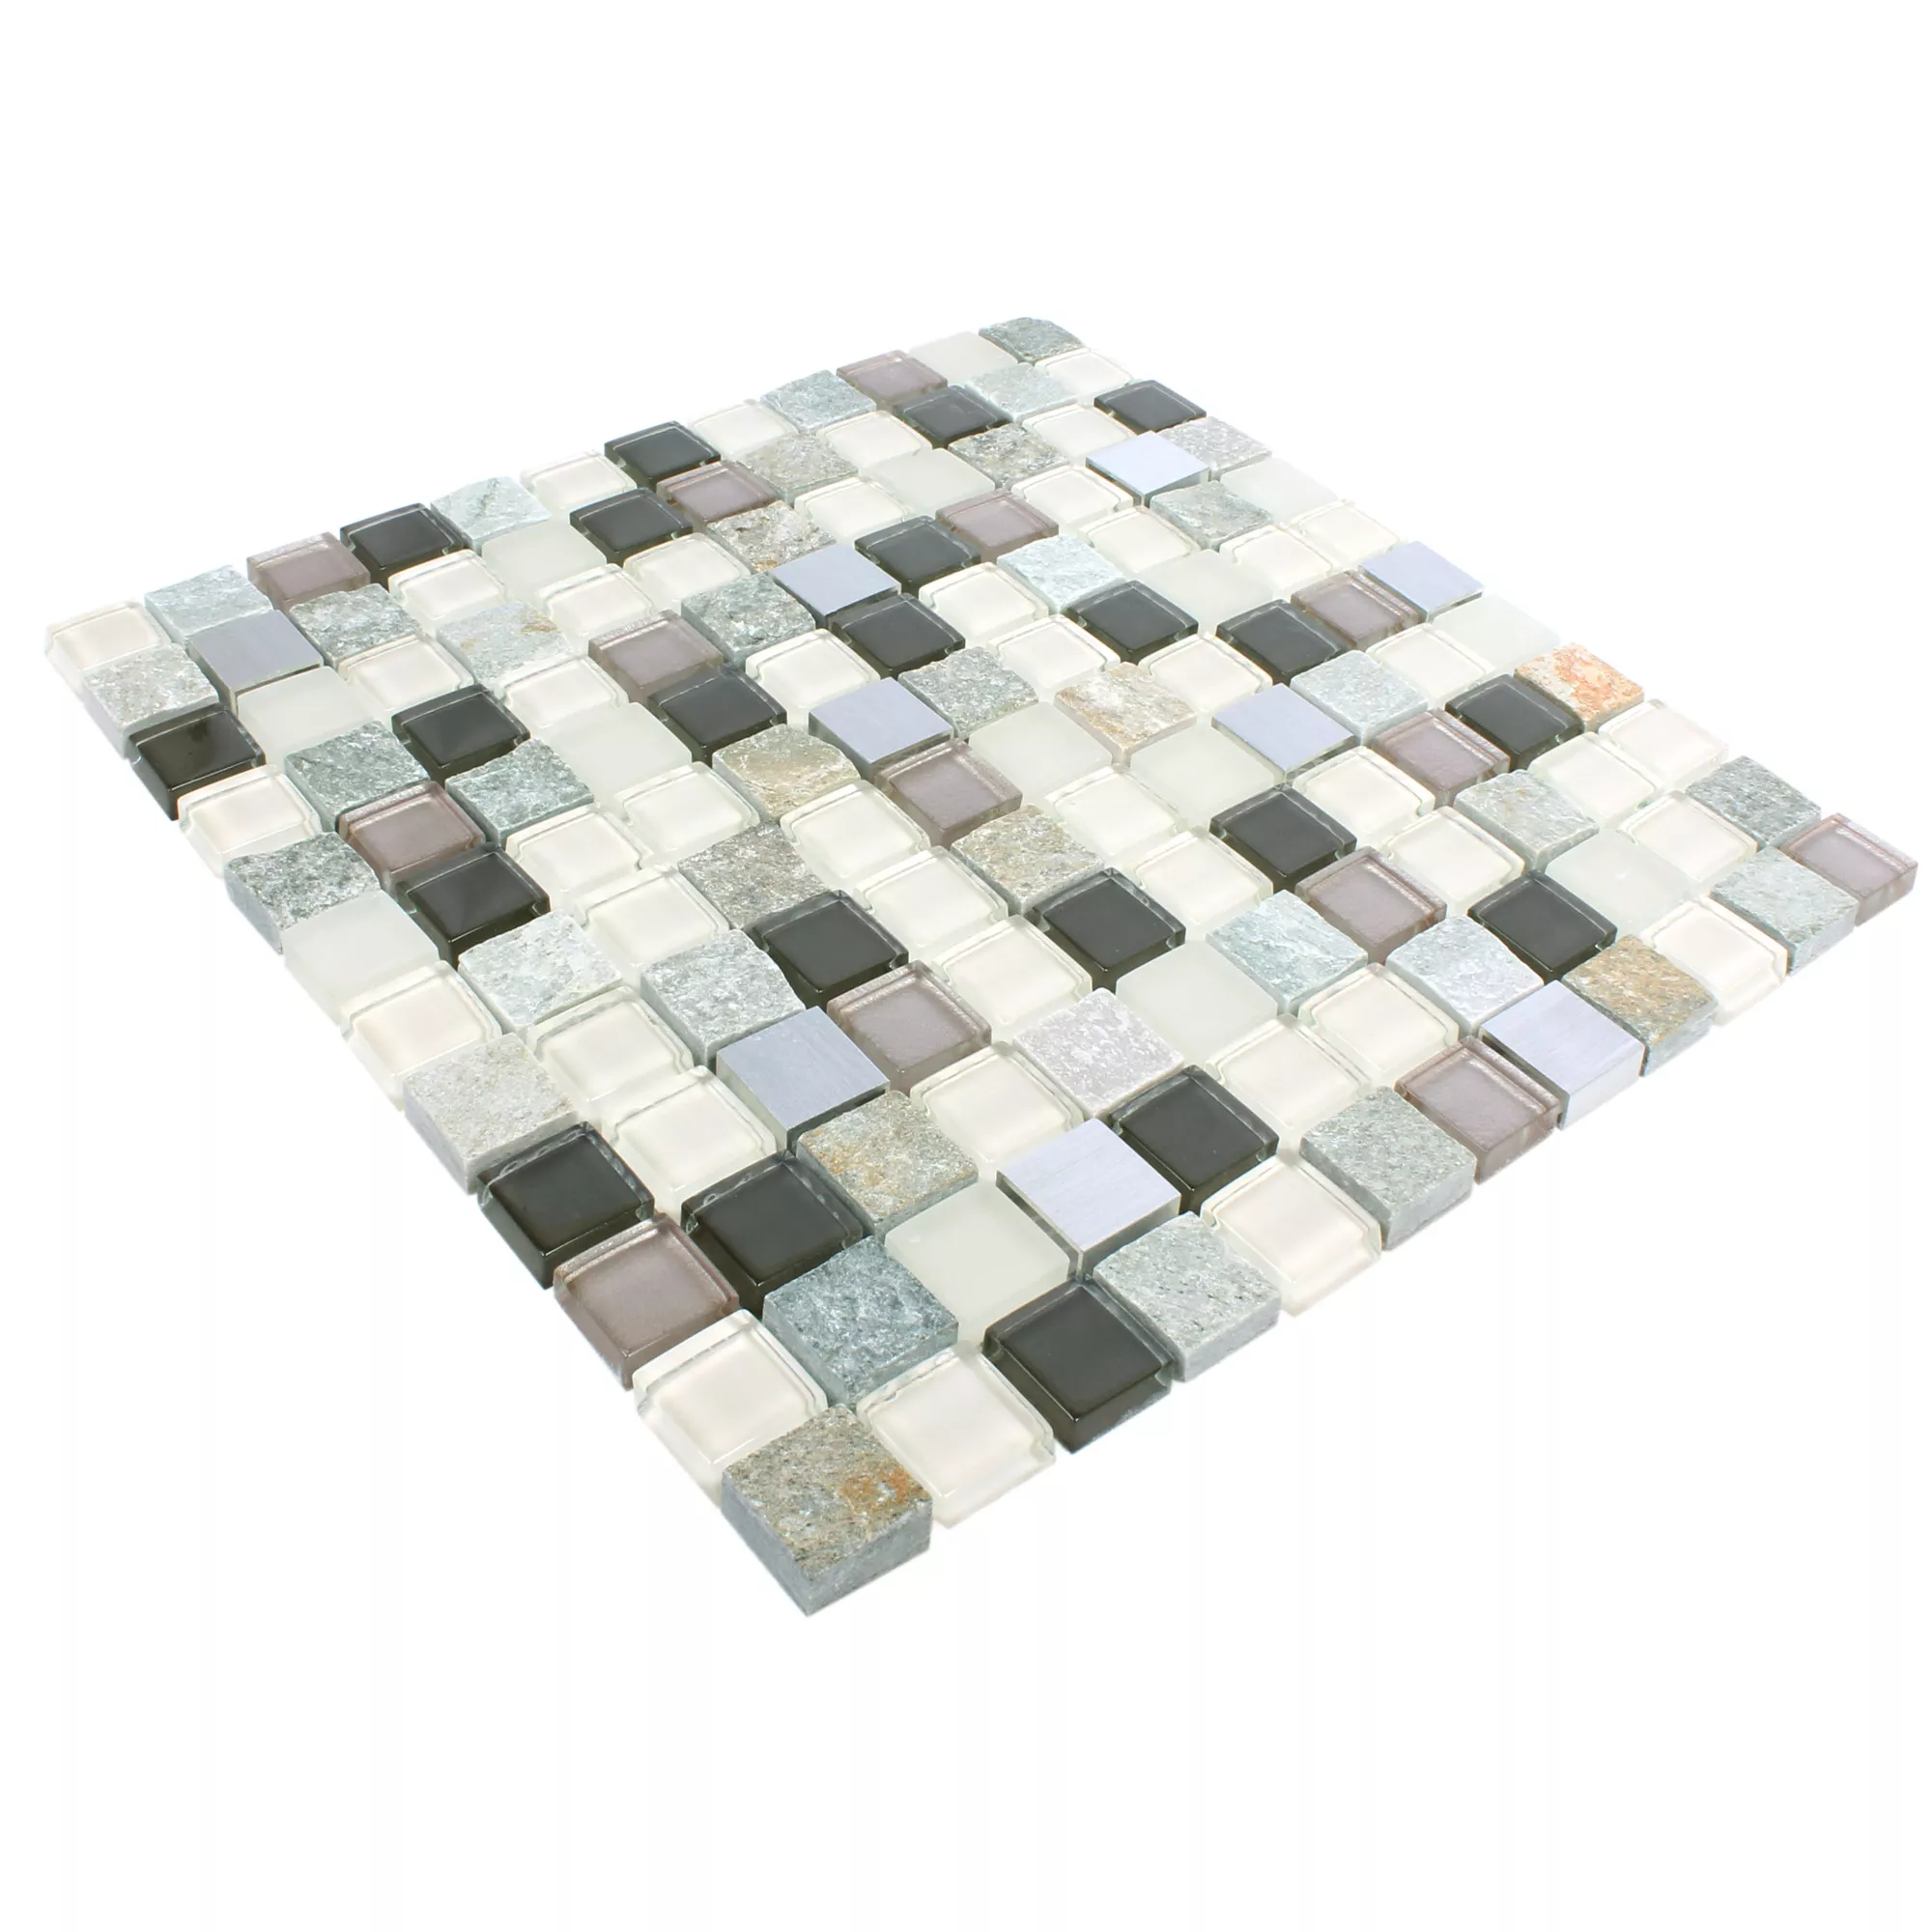 Sample Mosaic Tiles Natural Stone Glass Metal Mix Altona